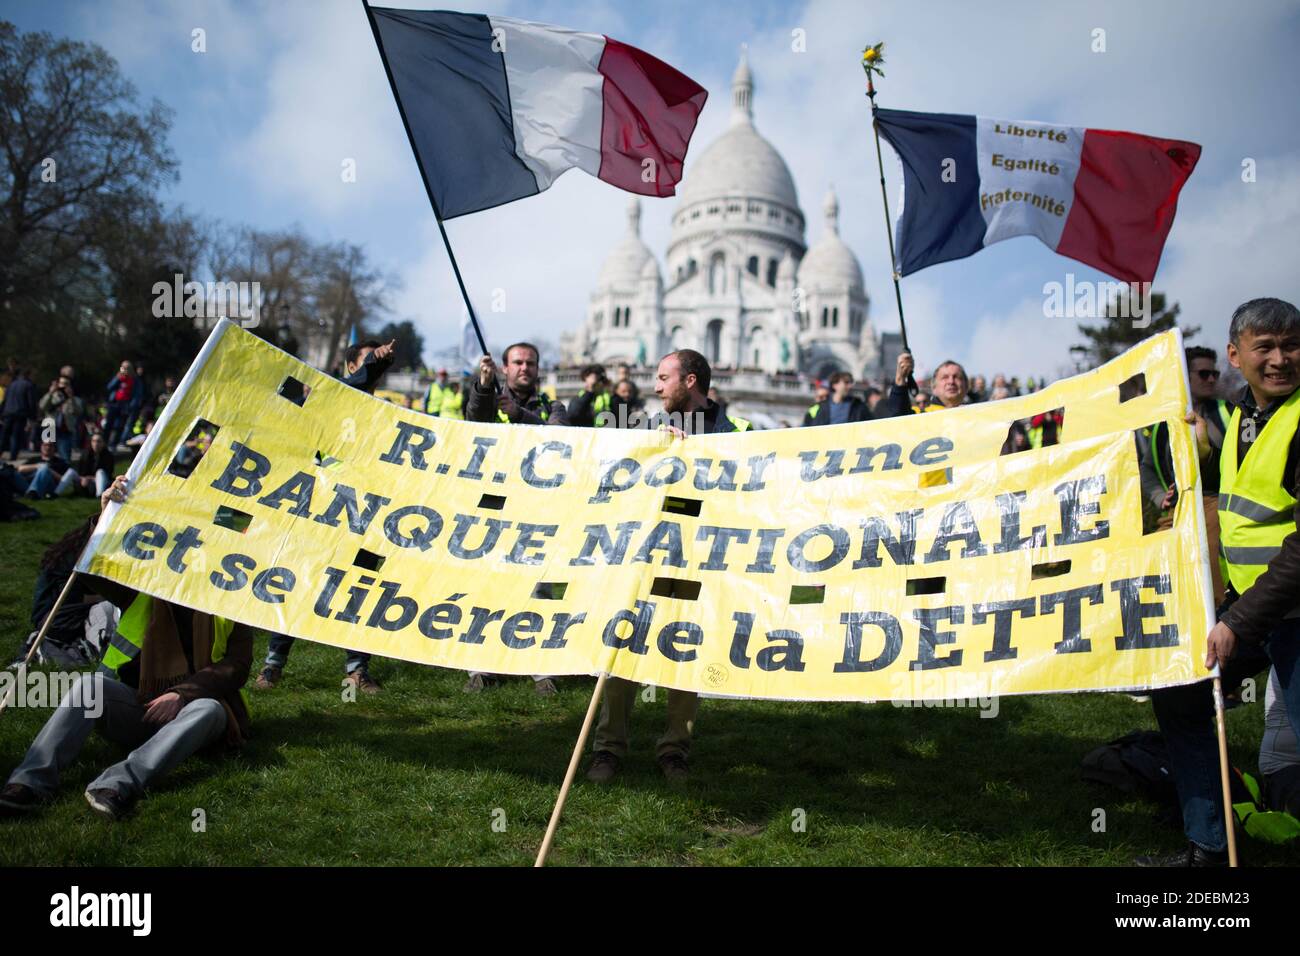 Gelbe Weste Demonstranten versammeln sich vor der Basilika Sacre Coeur in Montmartre, Demonstranten halten zwei französische Fahnen und halten ein Schild für die R.I.C., Referundum d'Initiative citoyenne in Paris am 23. März 2019, während einer regierungsfeindlichen Demonstration, die von der Bewegung "Gelbe Weste" (Gilets jaunes) aufgerufen wird. Am 23. März trafen Demonstranten erneut in den Straßen der französischen Stadt ein, um eine 19. Woche in Folge landesweit gegen 19 die Politik des französischen Präsidenten und seinen Regierungsstil von oben nach unten, hohe Lebenshaltungskosten, staatliche Steuerreformen und für mehr "soziale und wirtschaftliche Gerechtigkeit" zu protestieren. Foto von Raphael Stockfoto